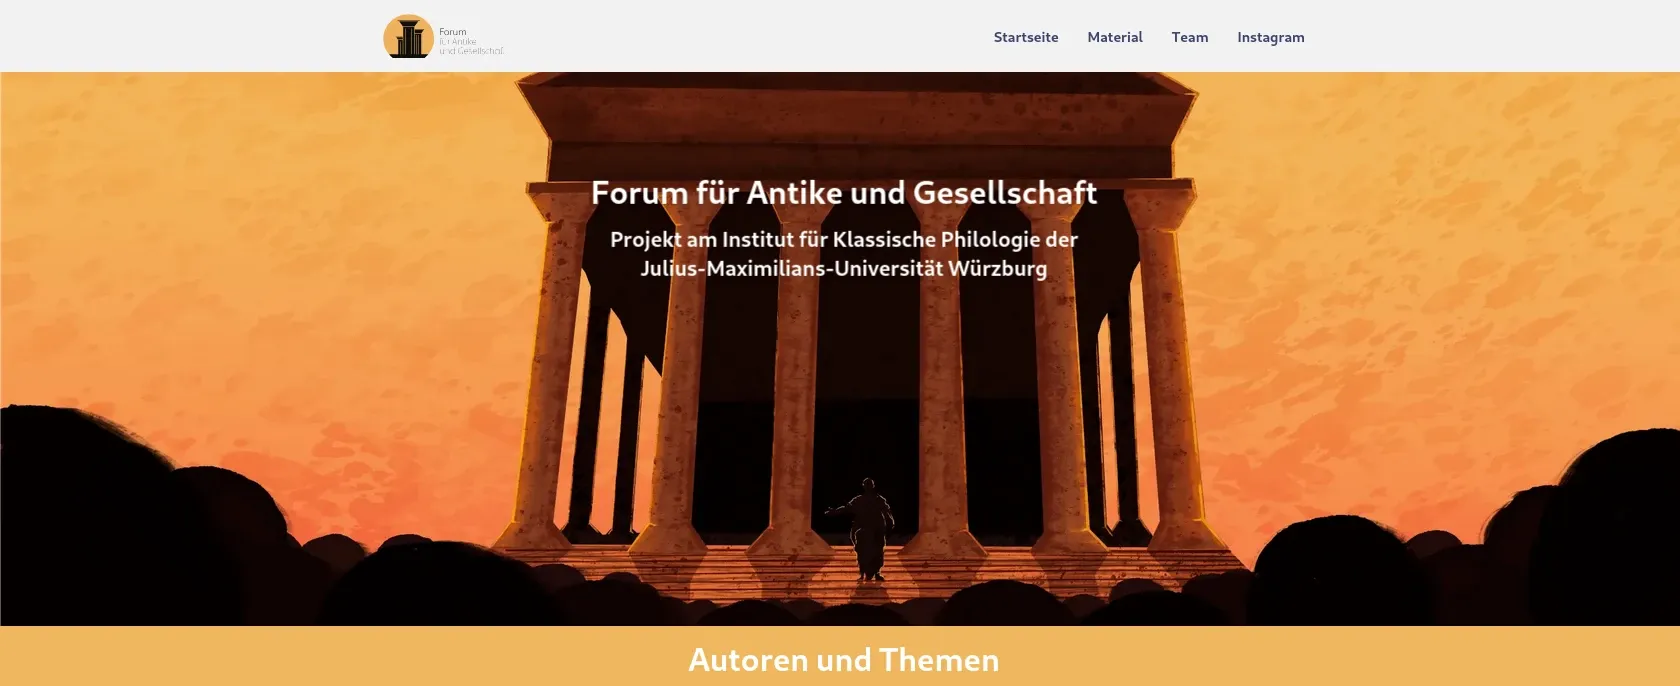 Screenshot of the homepage of the "Forum für Antike und Gesellschaft"